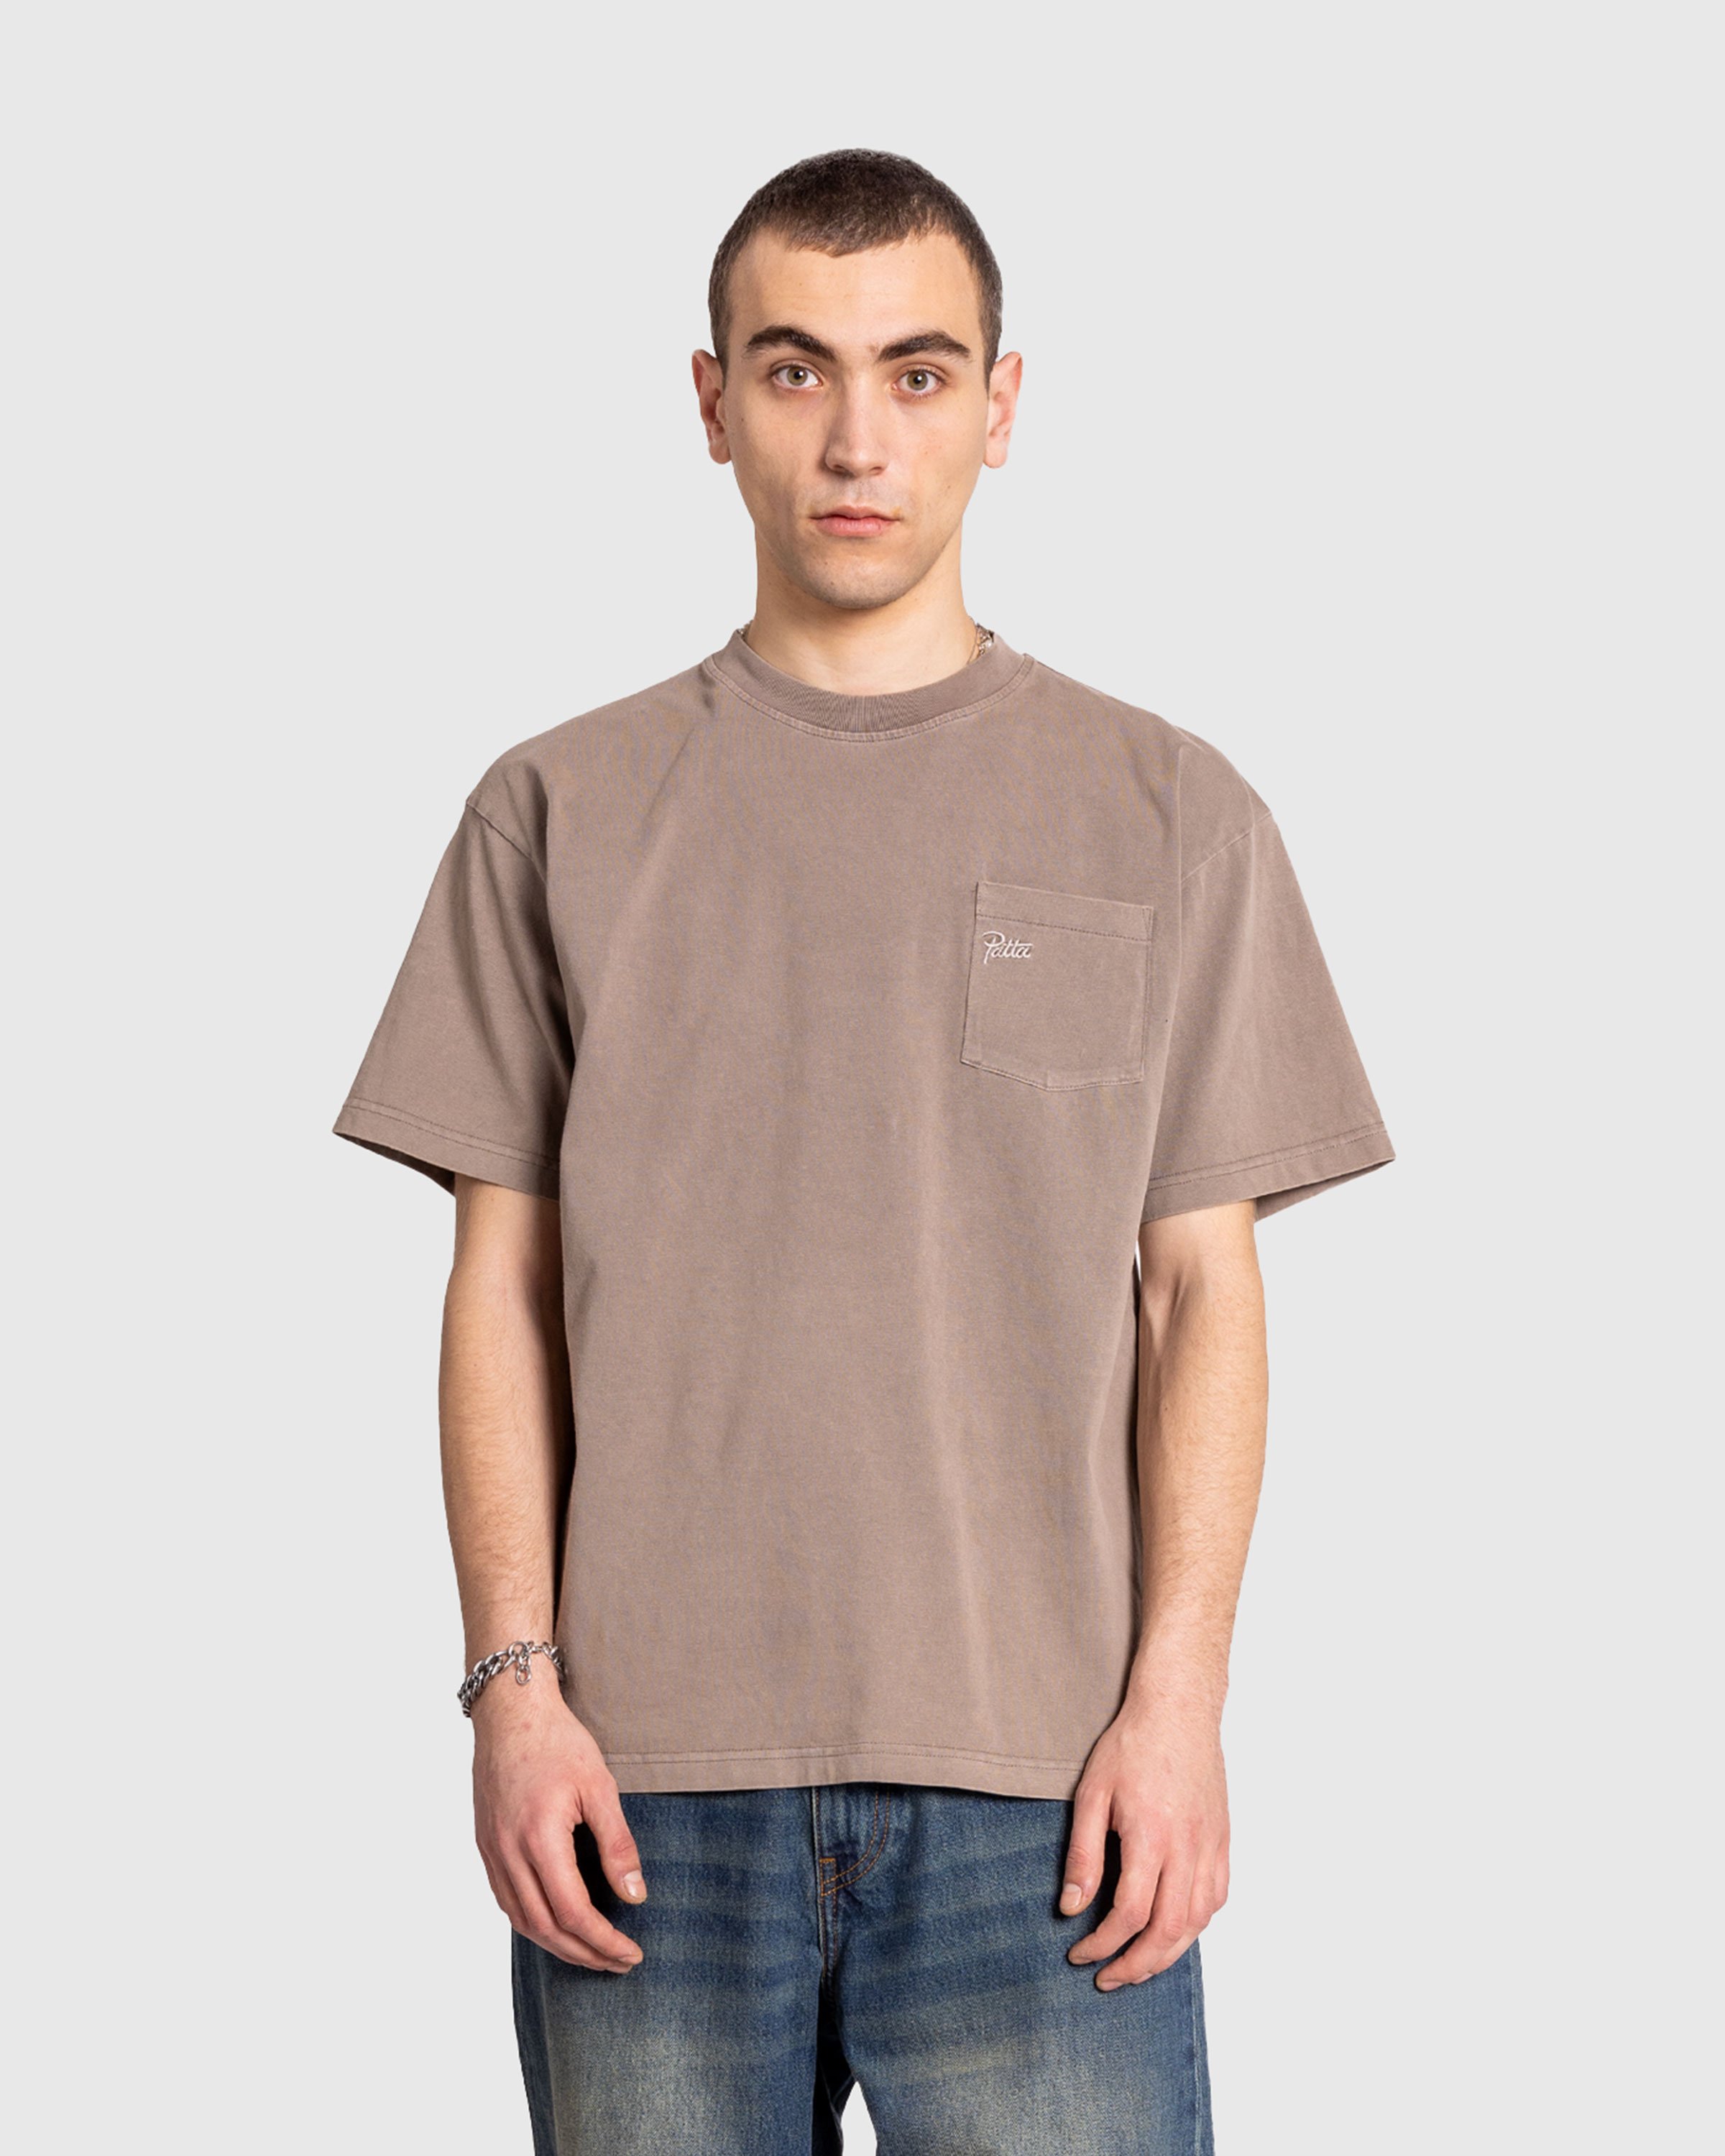 Patta - Basic Pocket T-Shirt Driftwood - Clothing - Grey - Image 2